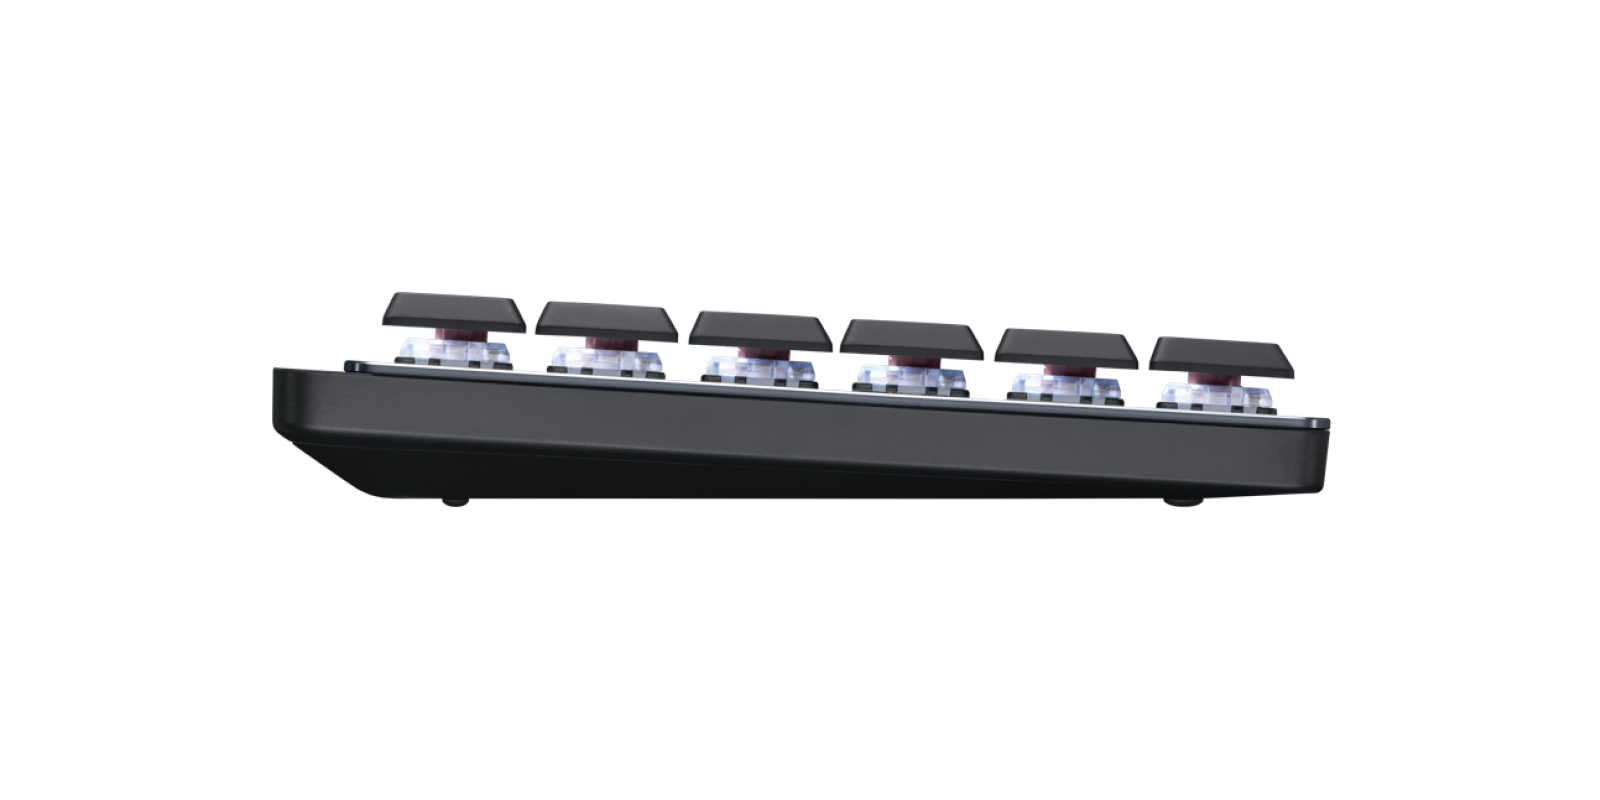 Logitech 920-010776 MX Mechanical Mini, Minimalist Illuminated Performance Keyboard